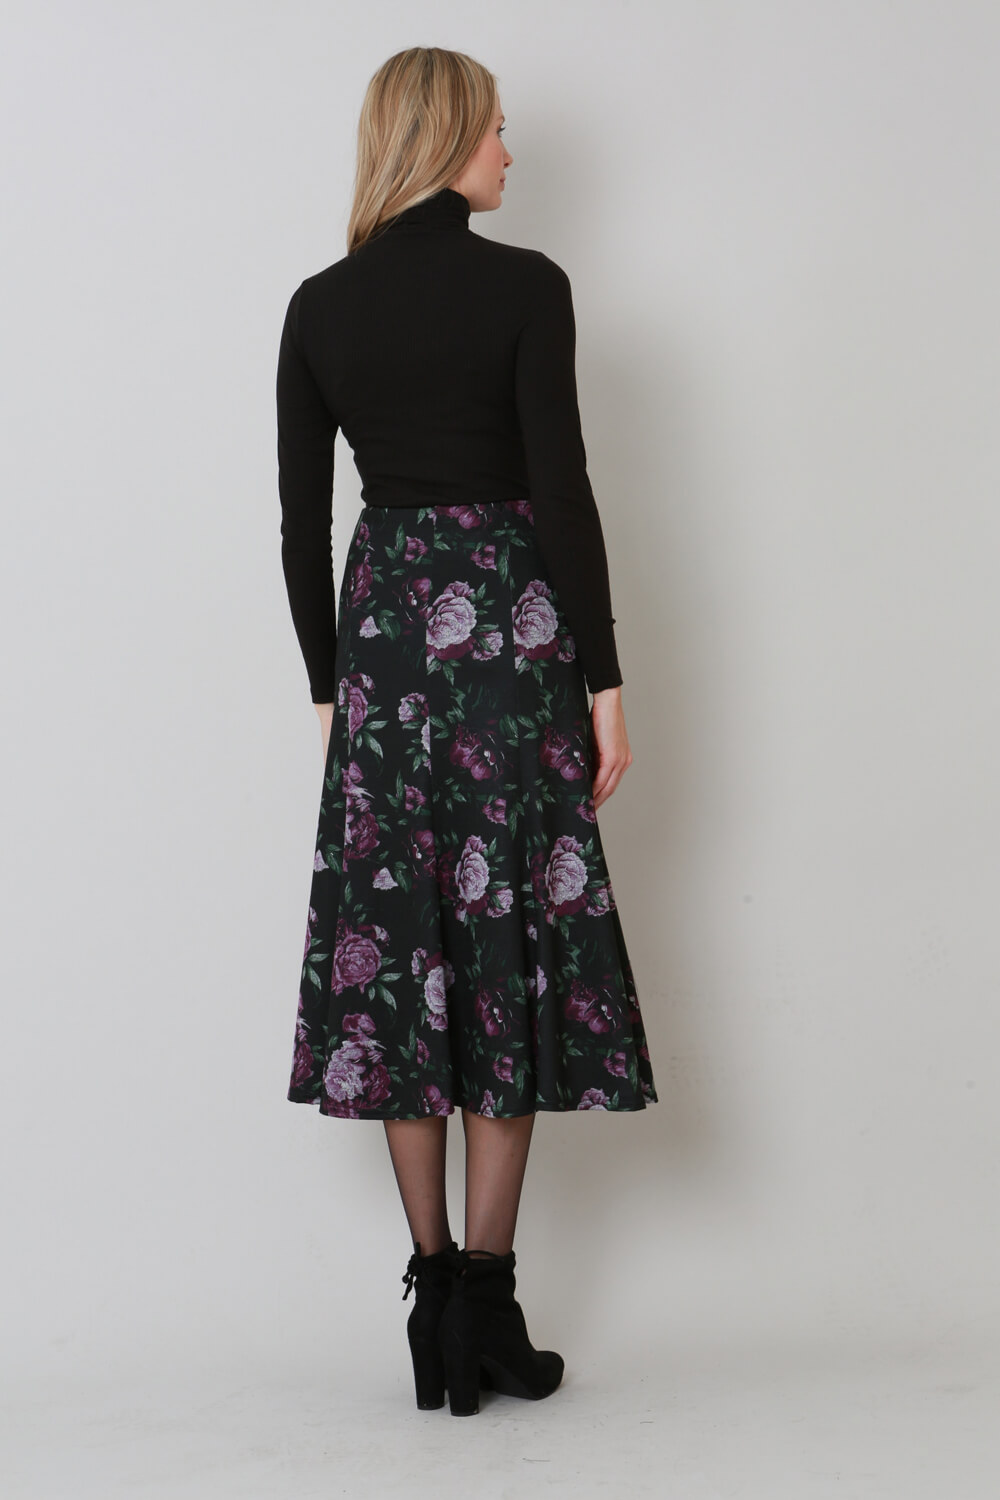 Plum Julianna Floral Print Midi Skirt, Image 2 of 3